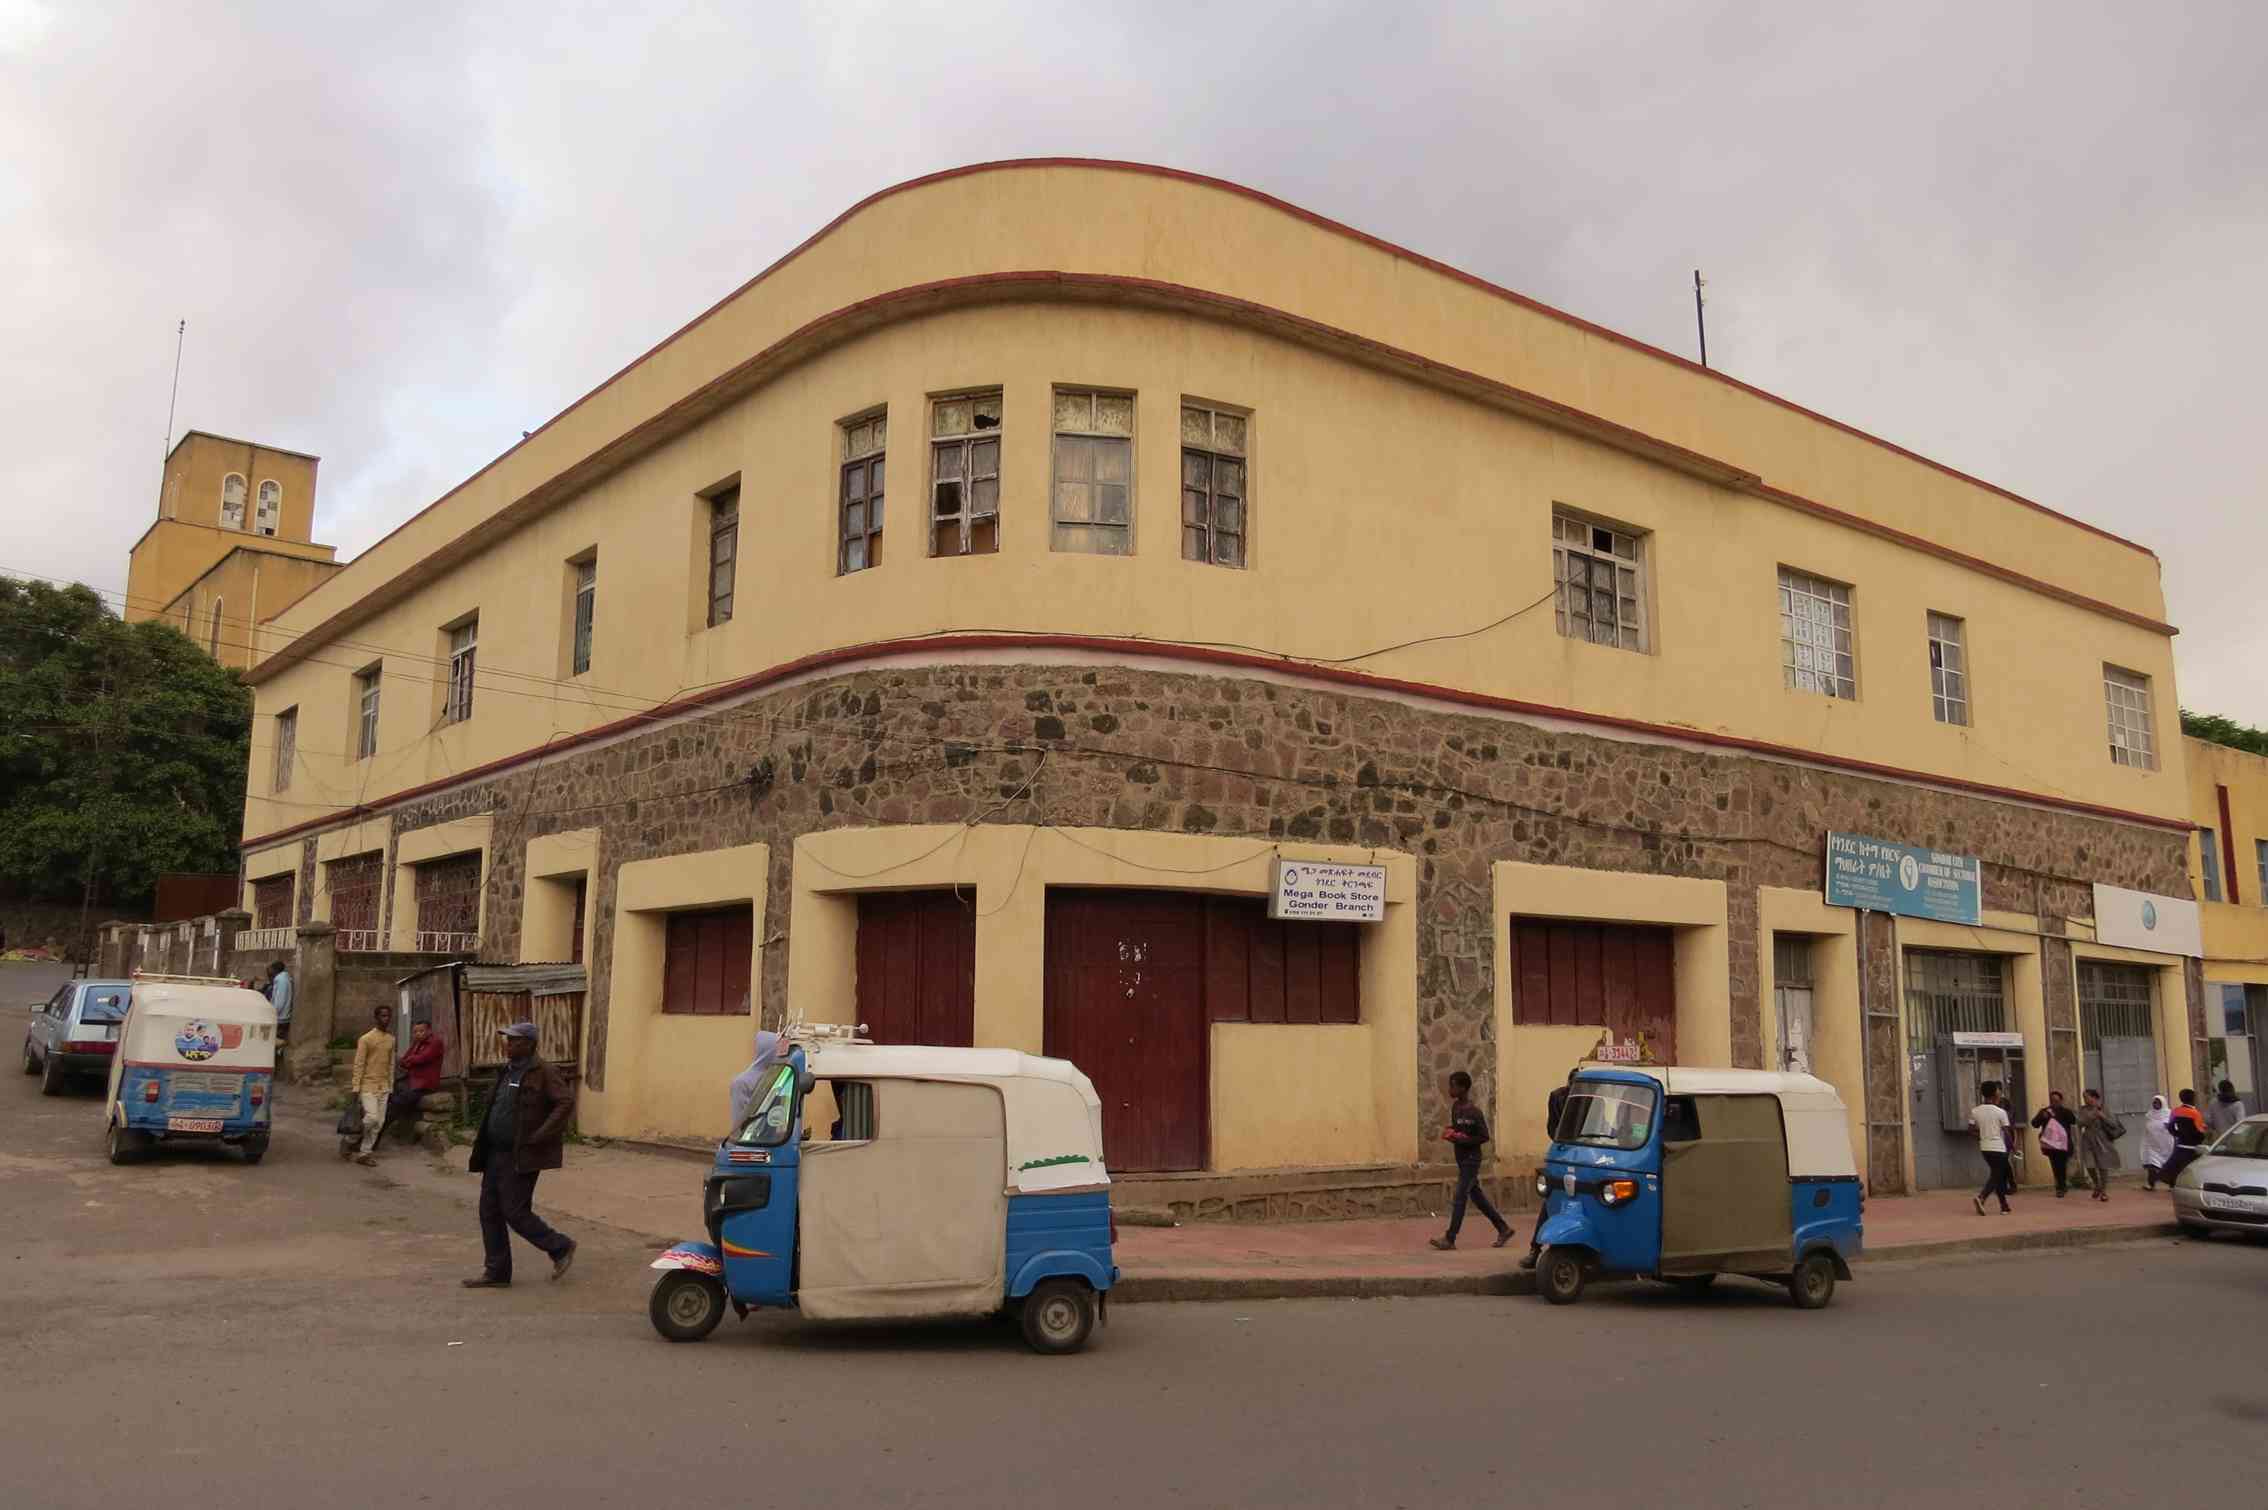 Arquitectura racionalista en el reino de saba. La ciudad de Gondar en Etiopía